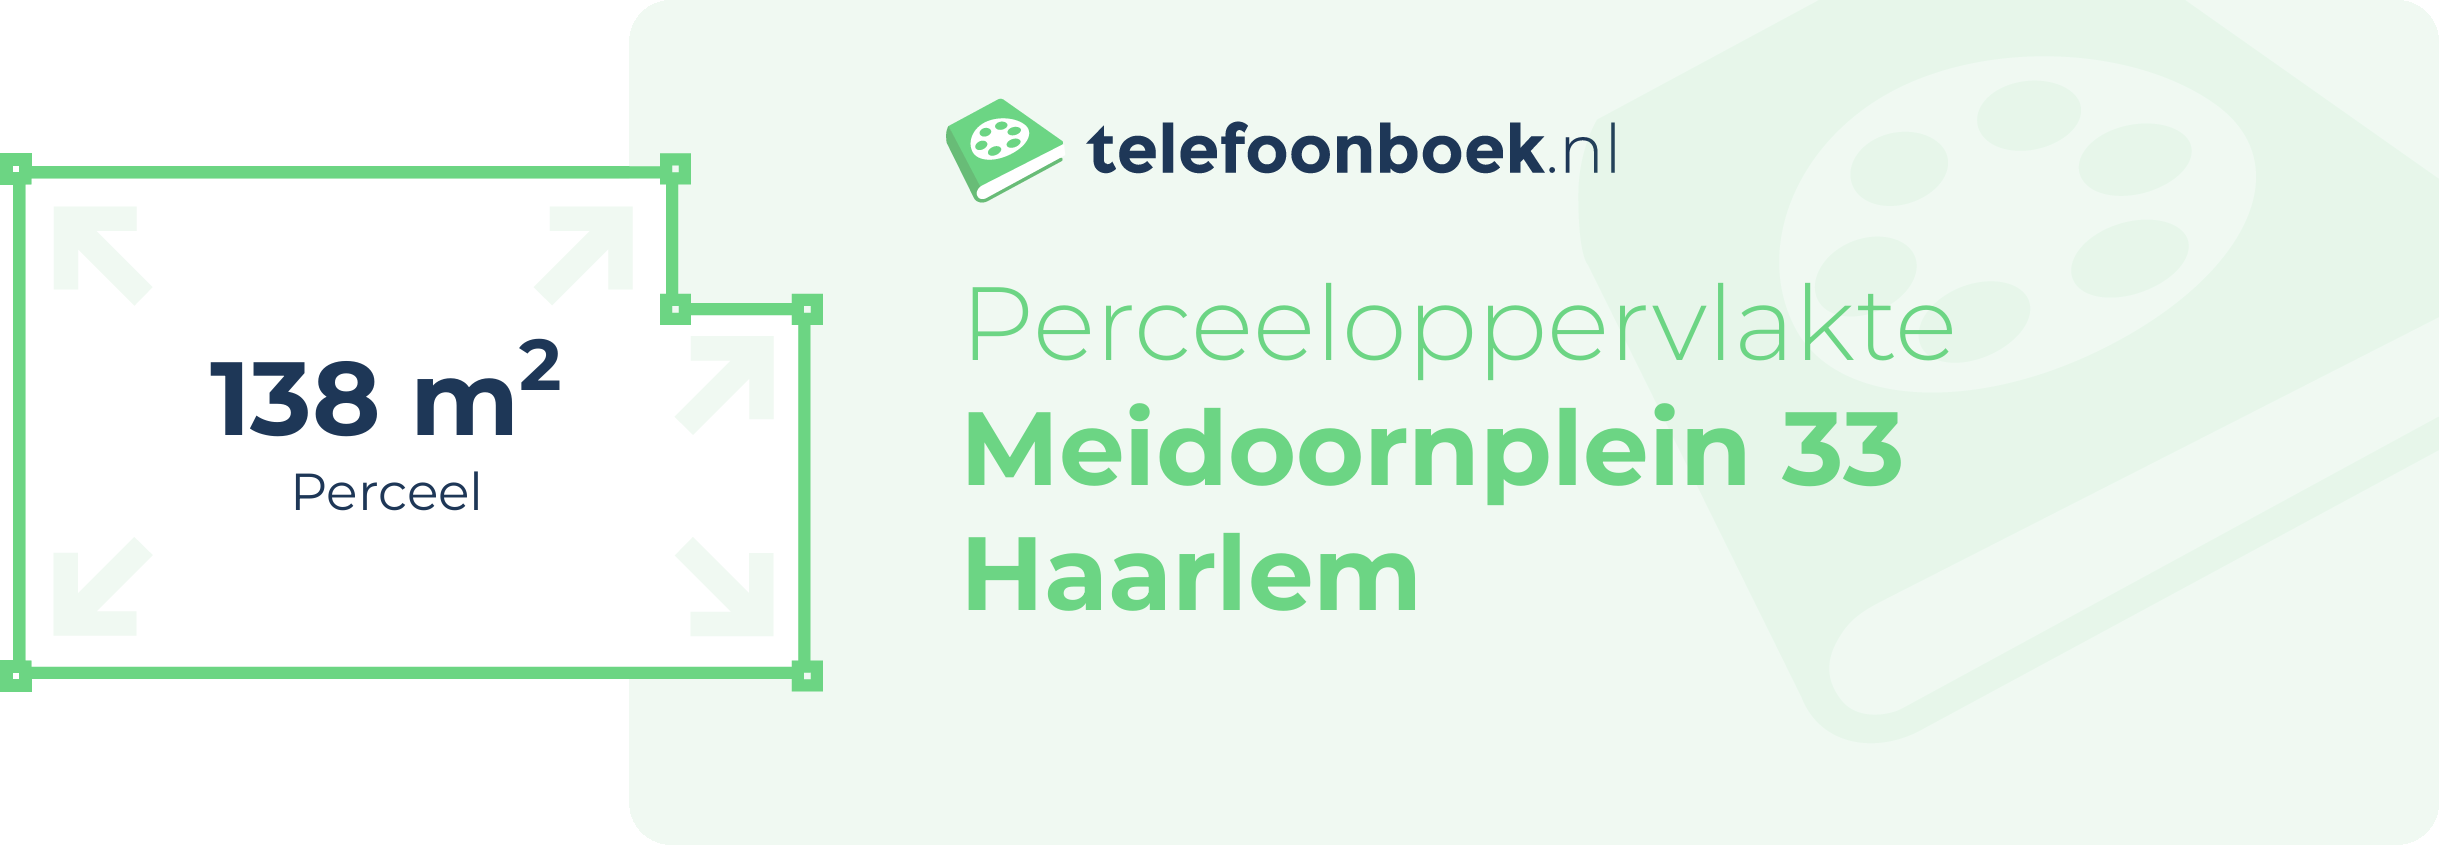 Perceeloppervlakte Meidoornplein 33 Haarlem